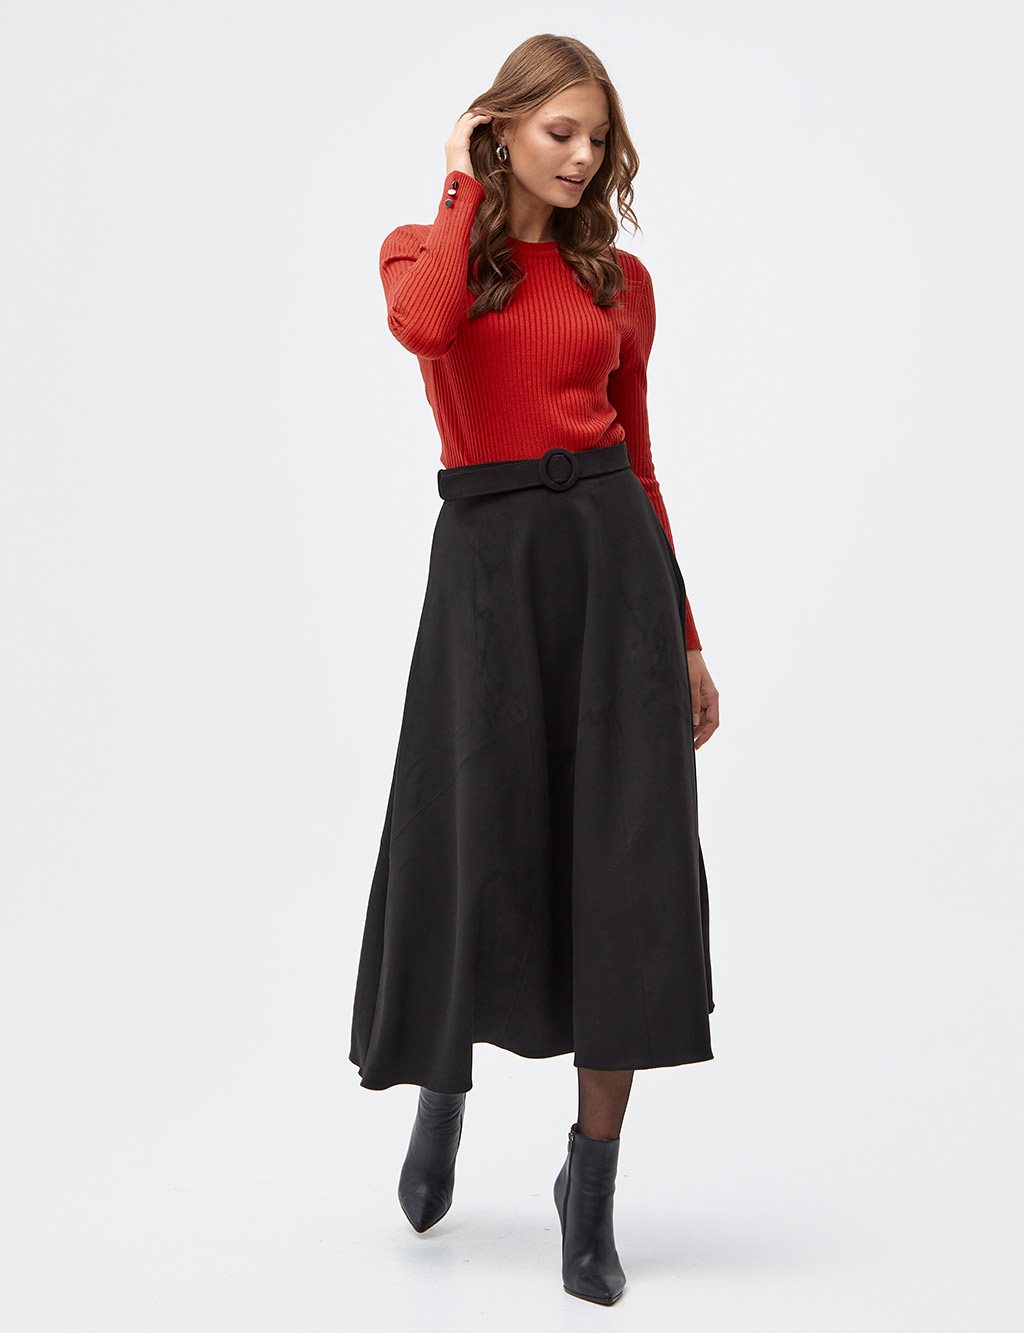 Belted Suede Skirt Black - Kayra.com